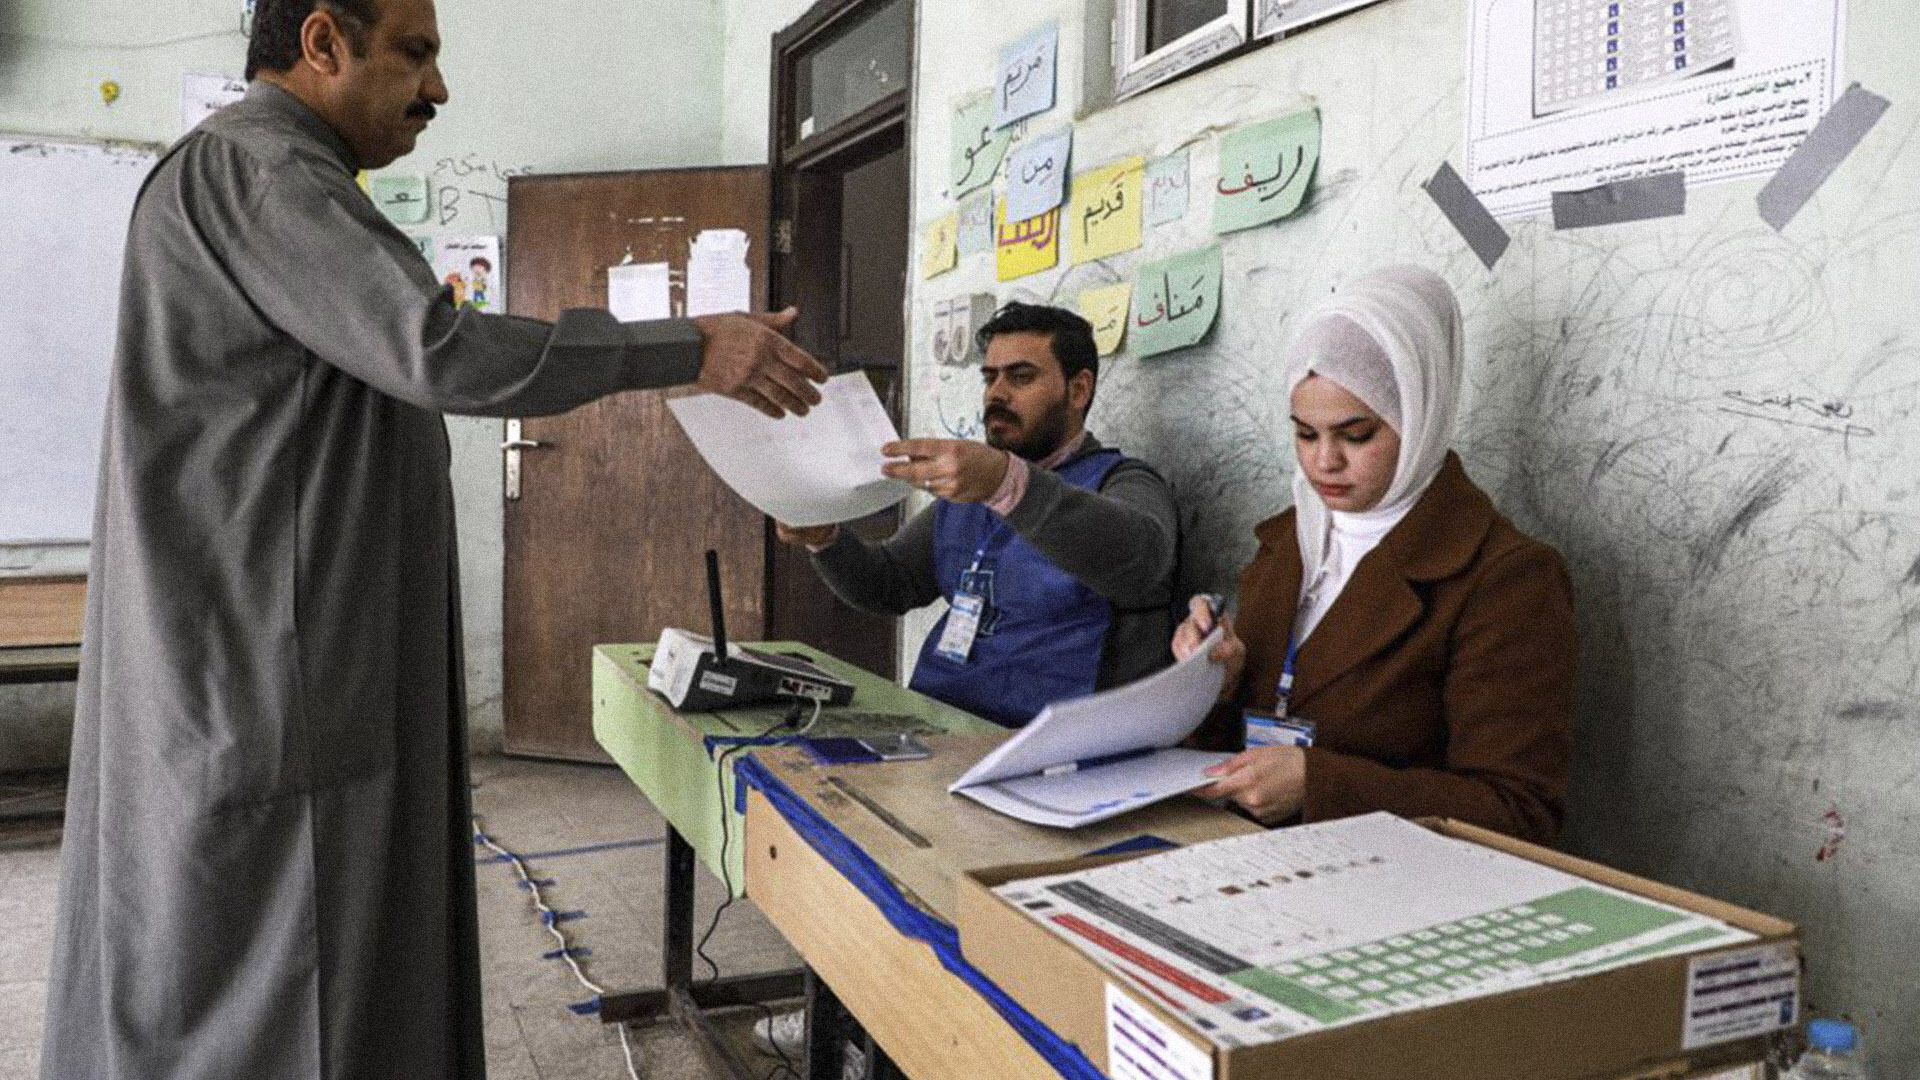 صورة انتخابات مجالس المحافظات العراقية: آمال بتغييرات جذرية في حياة الفائزين